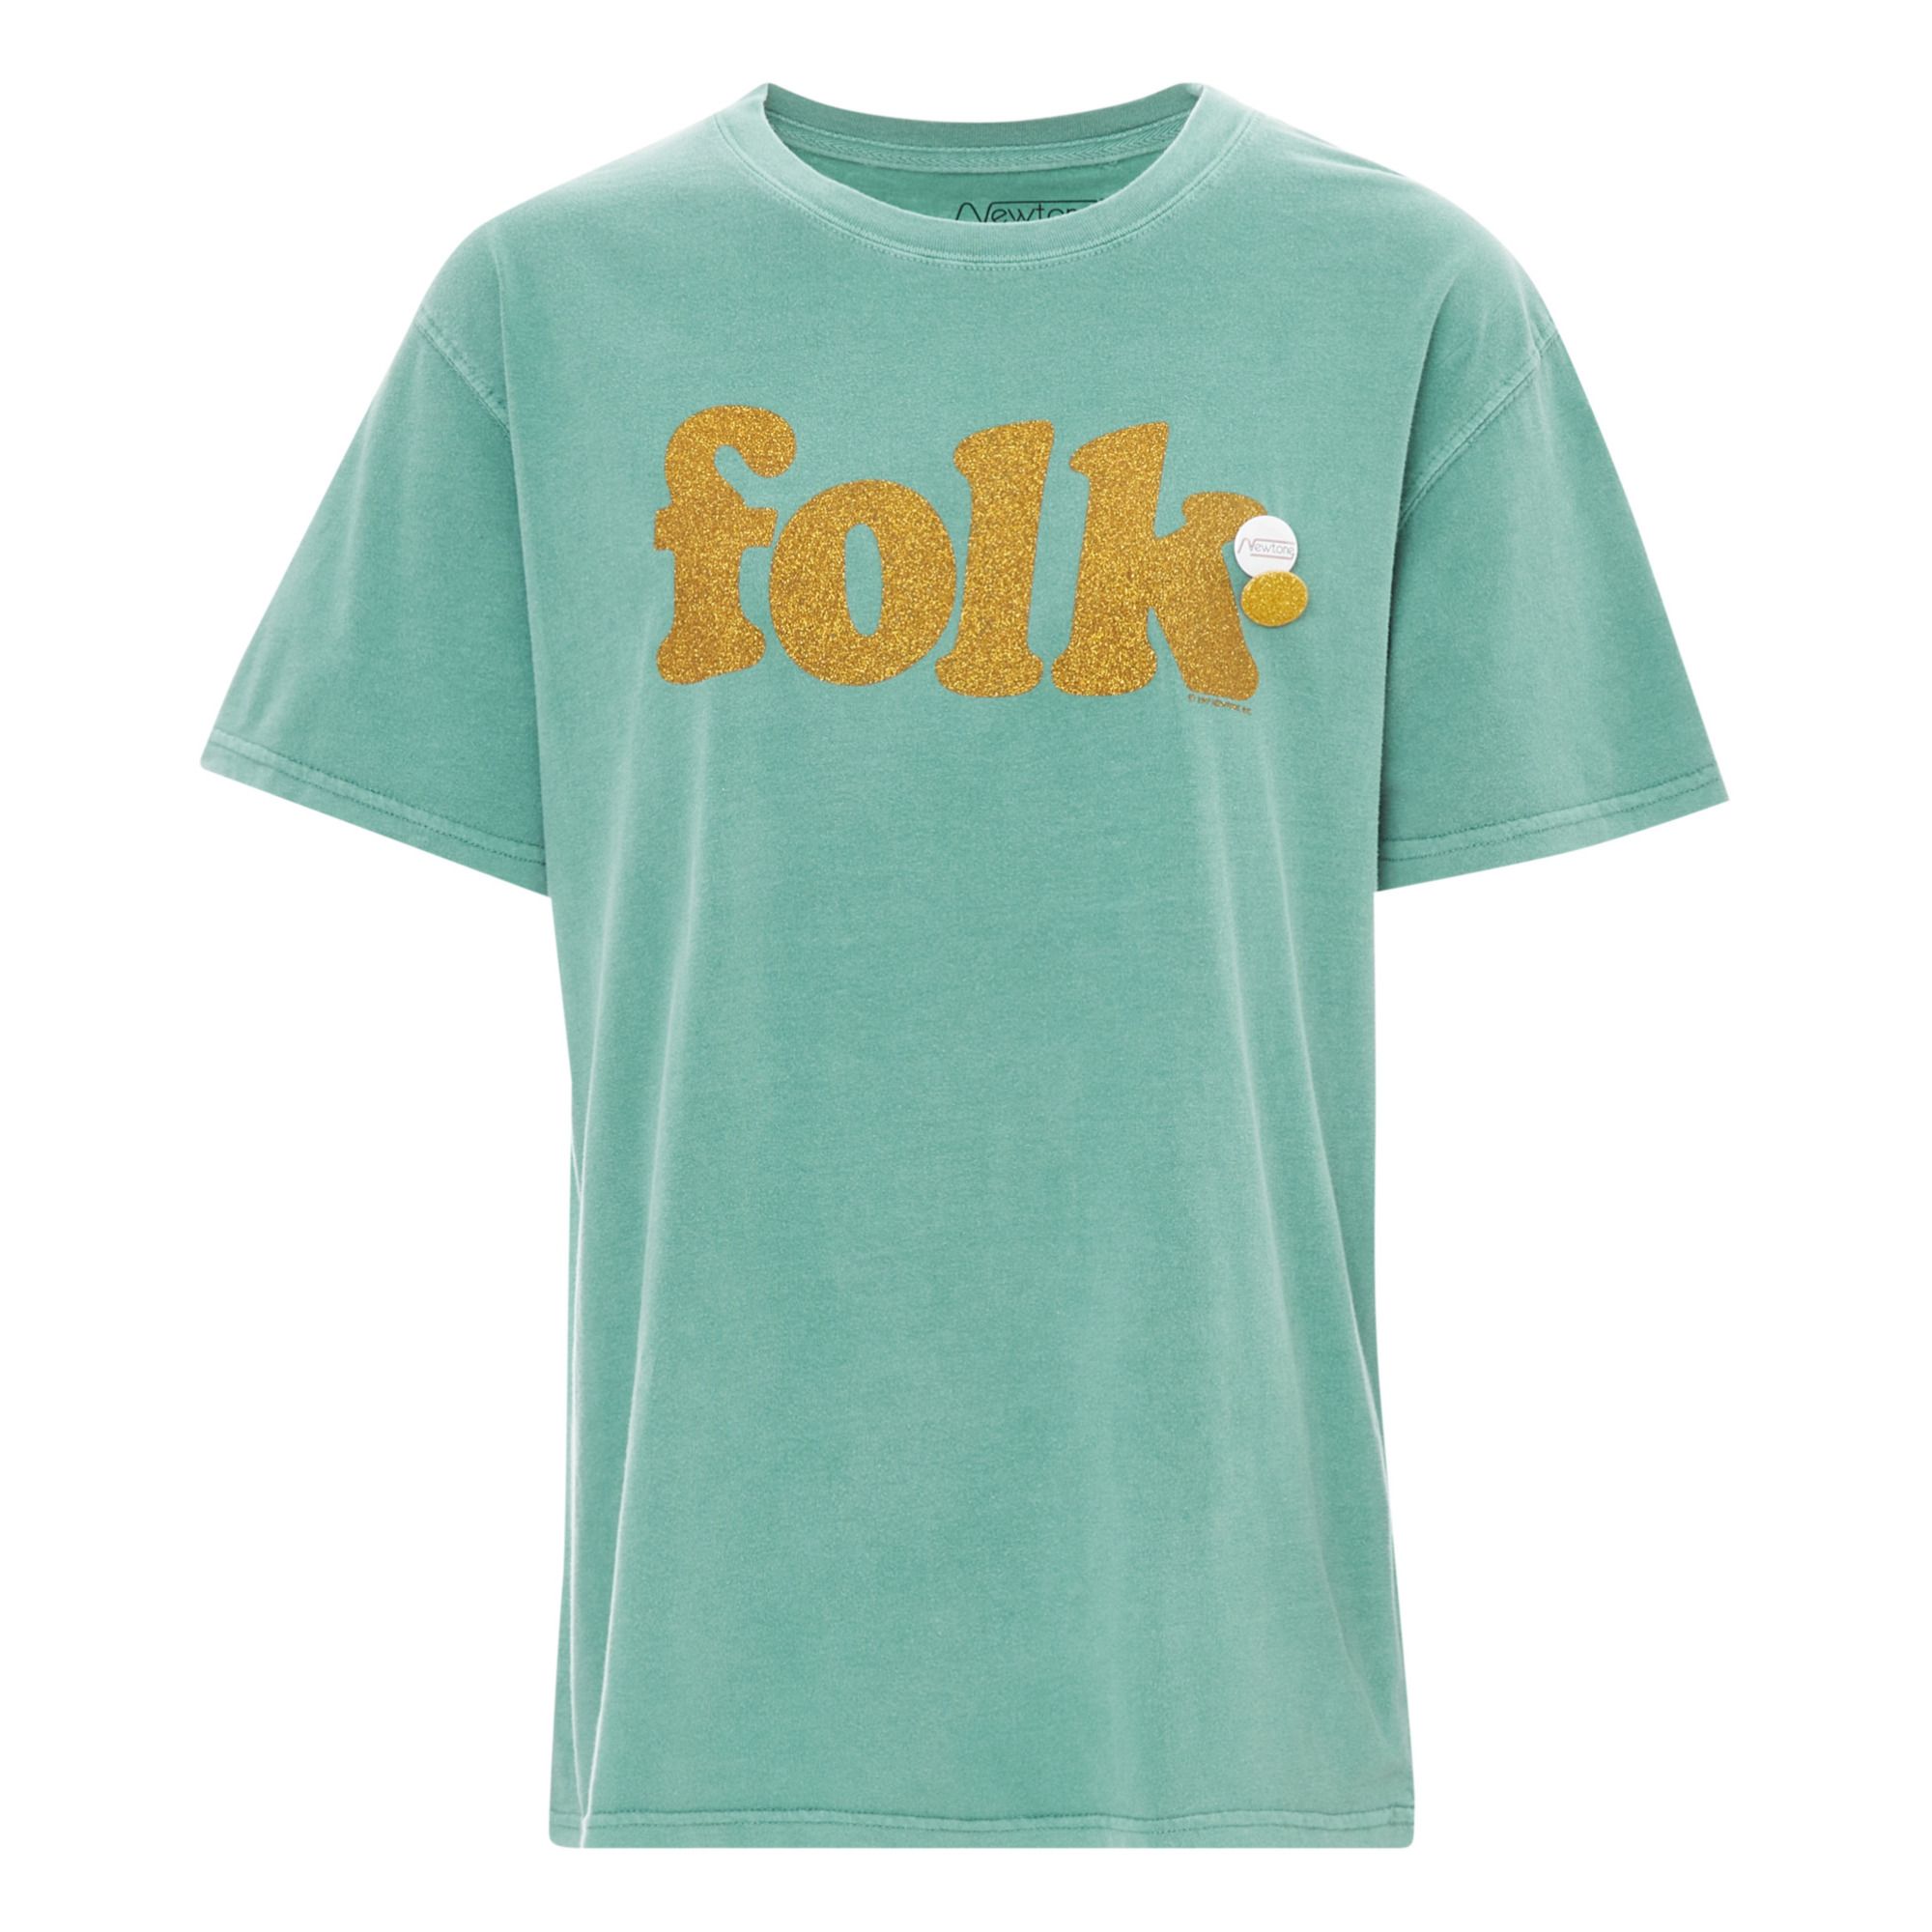 Newtone - T-Shirt Folk - Femme - Vert